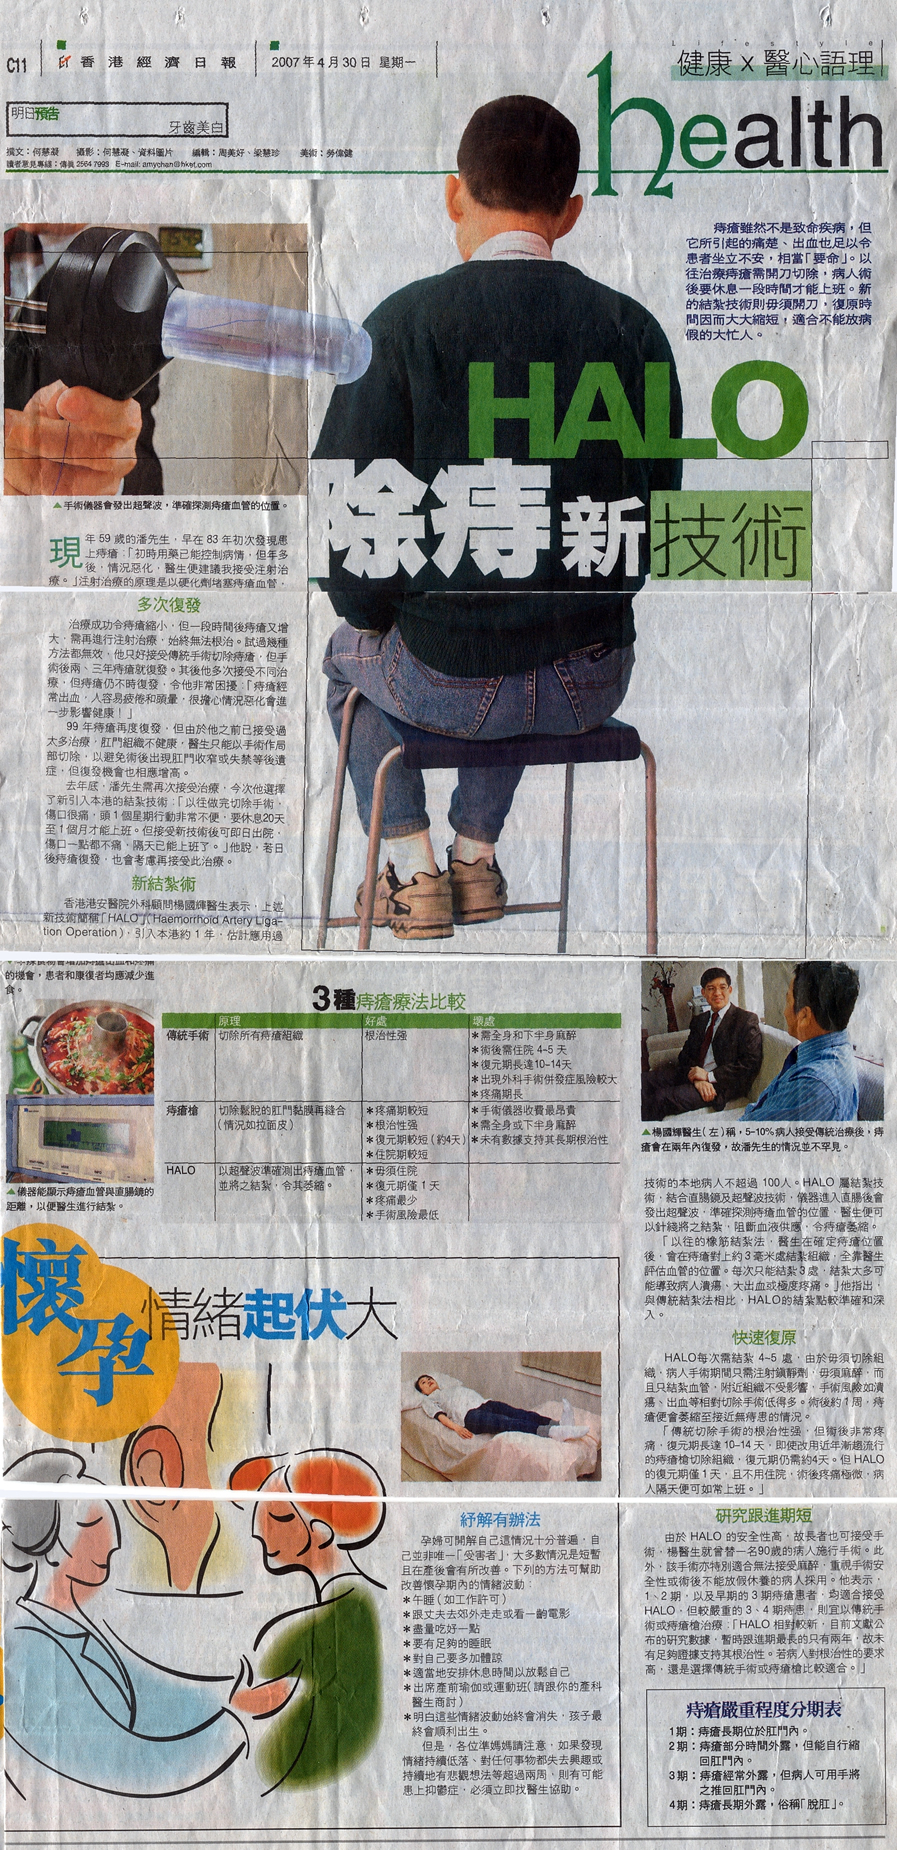 Hong Kong Haemorrhoid Centre newspaper6